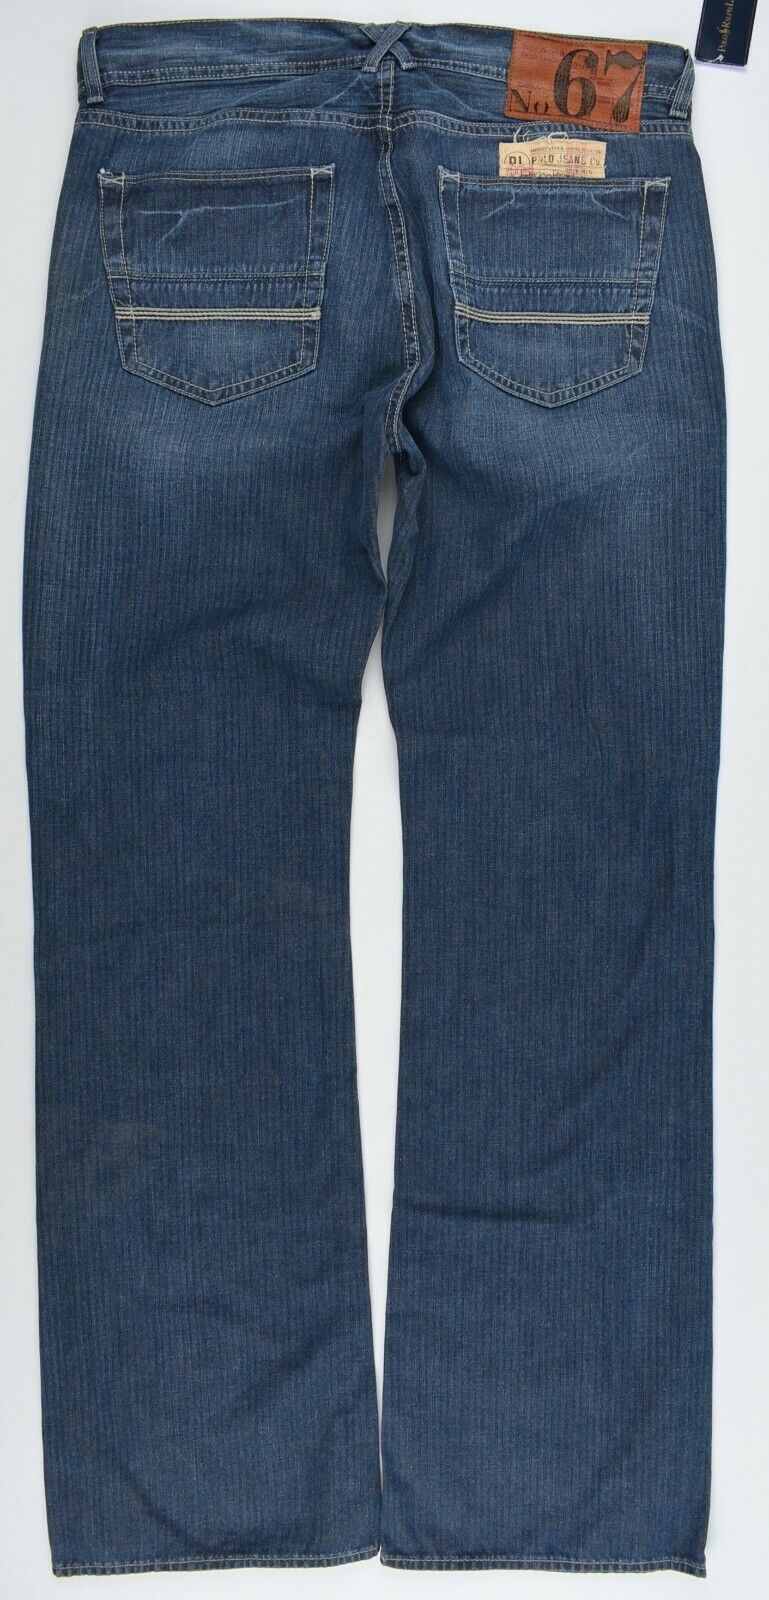 POLO RALPH LAUREN Men's COLTON Utility Jeans, Blue, size W33 L34